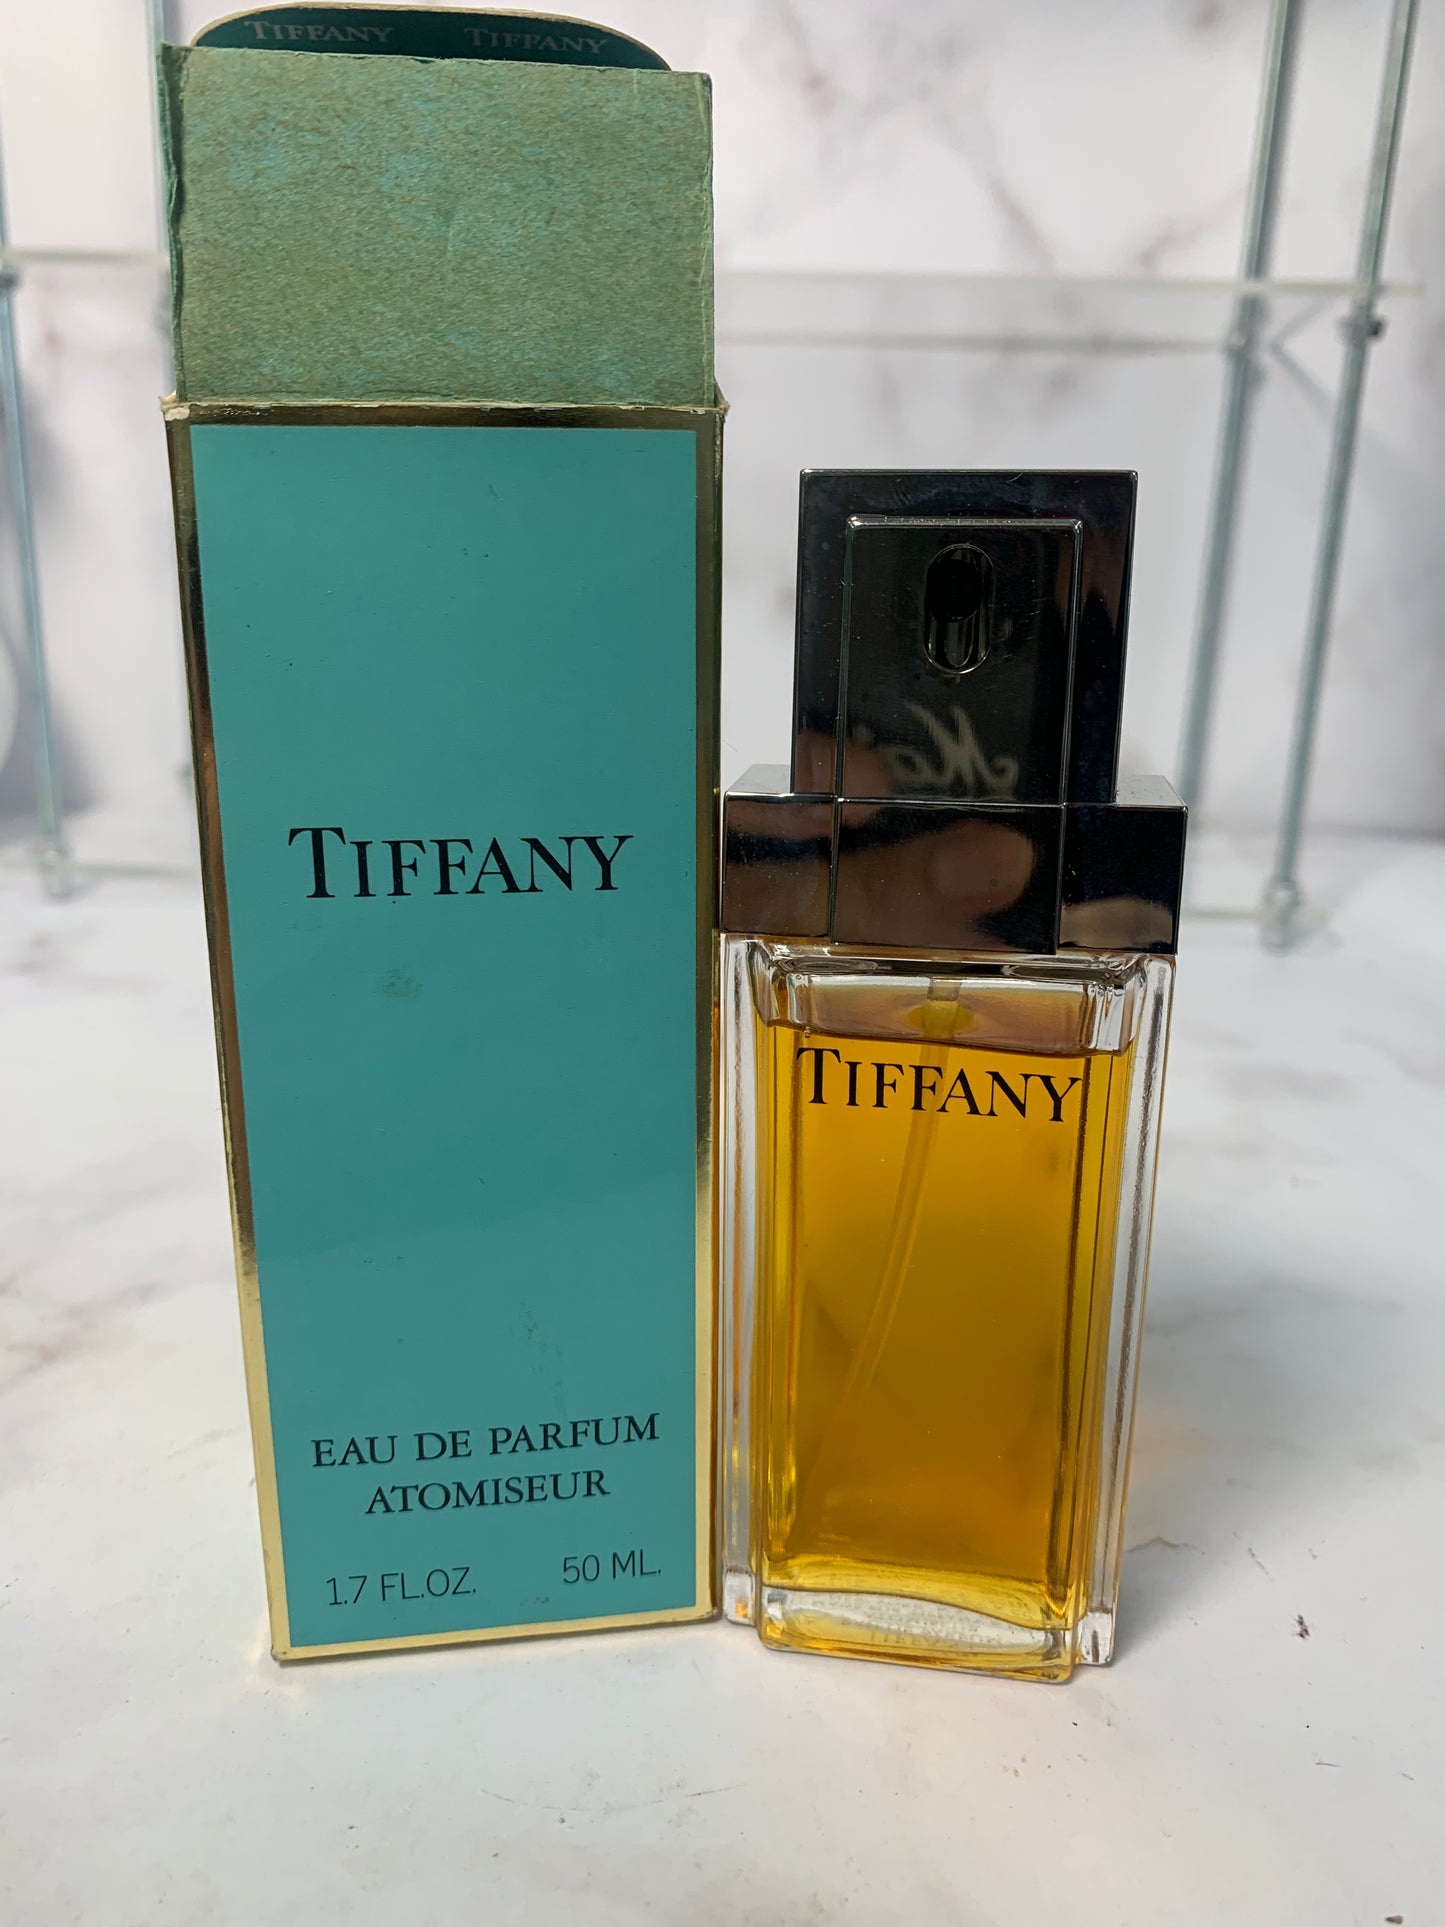 Rare Tiffany Eau de Parfum EDP 50ml 1.7 oz with box - 021023